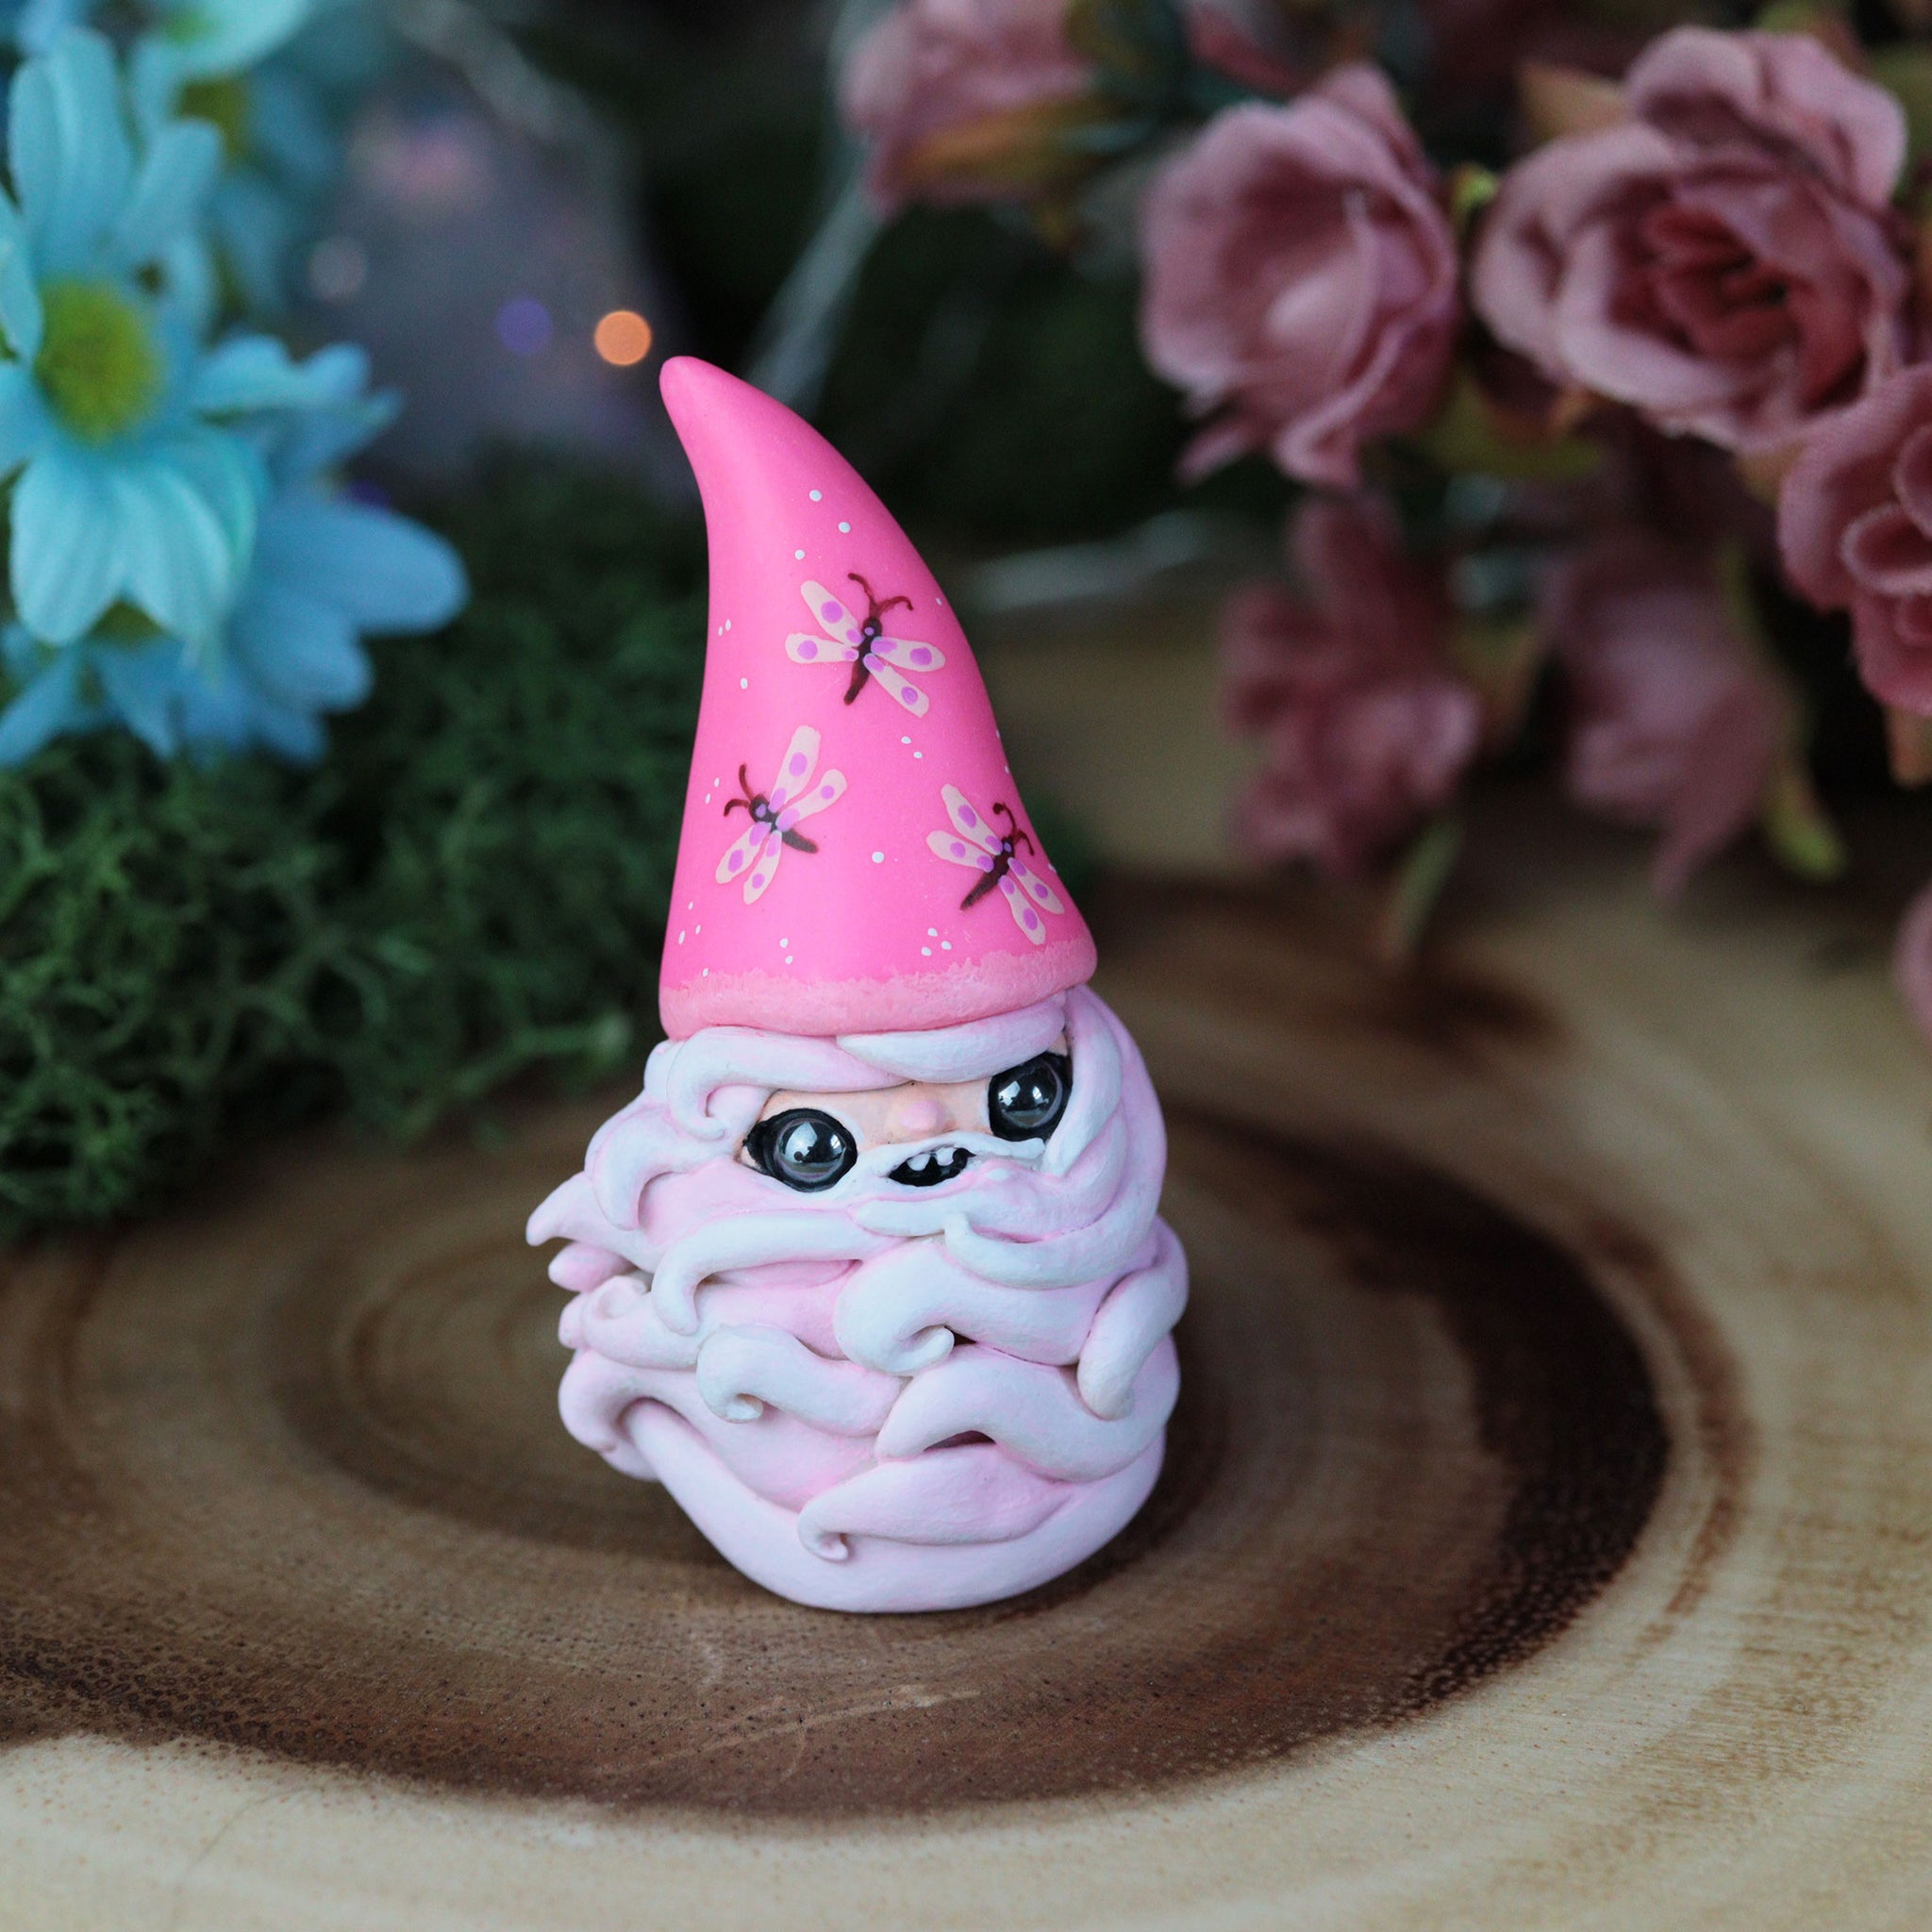 Pinky Gnome Figurine